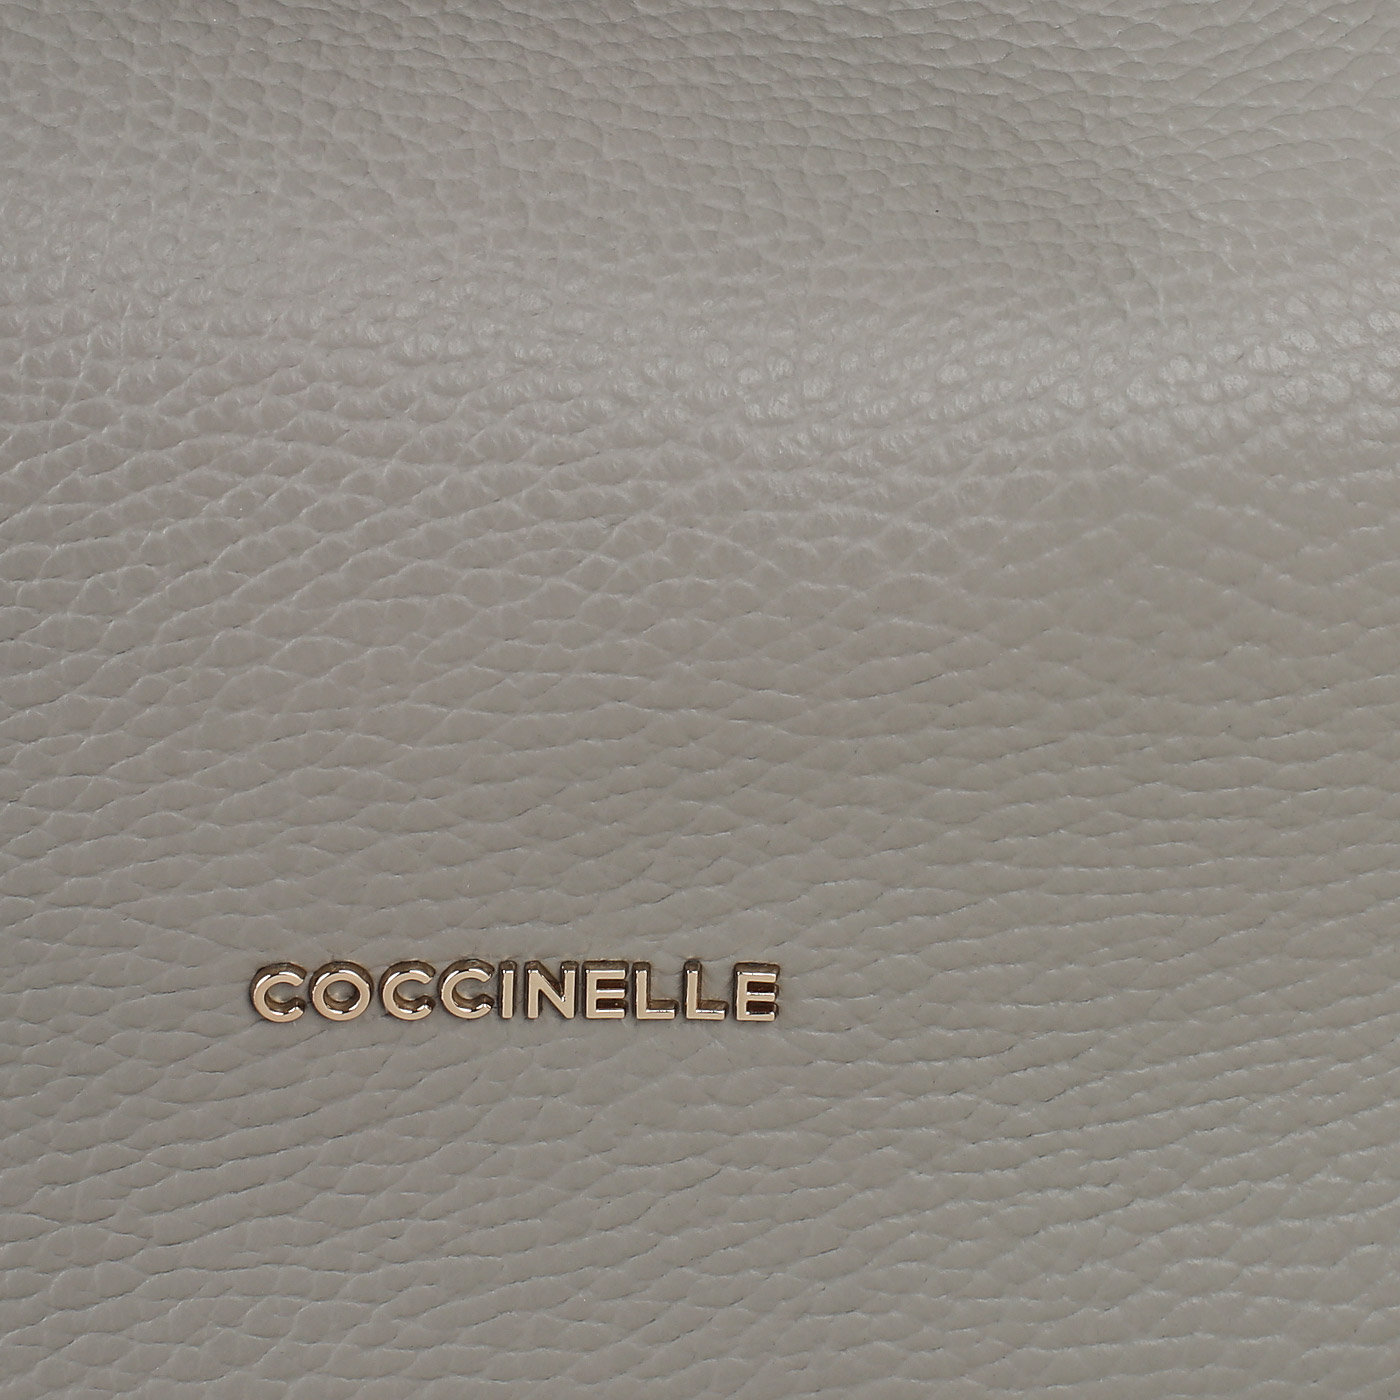 Кожаная сумка Coccinelle CoccinelleMaelody